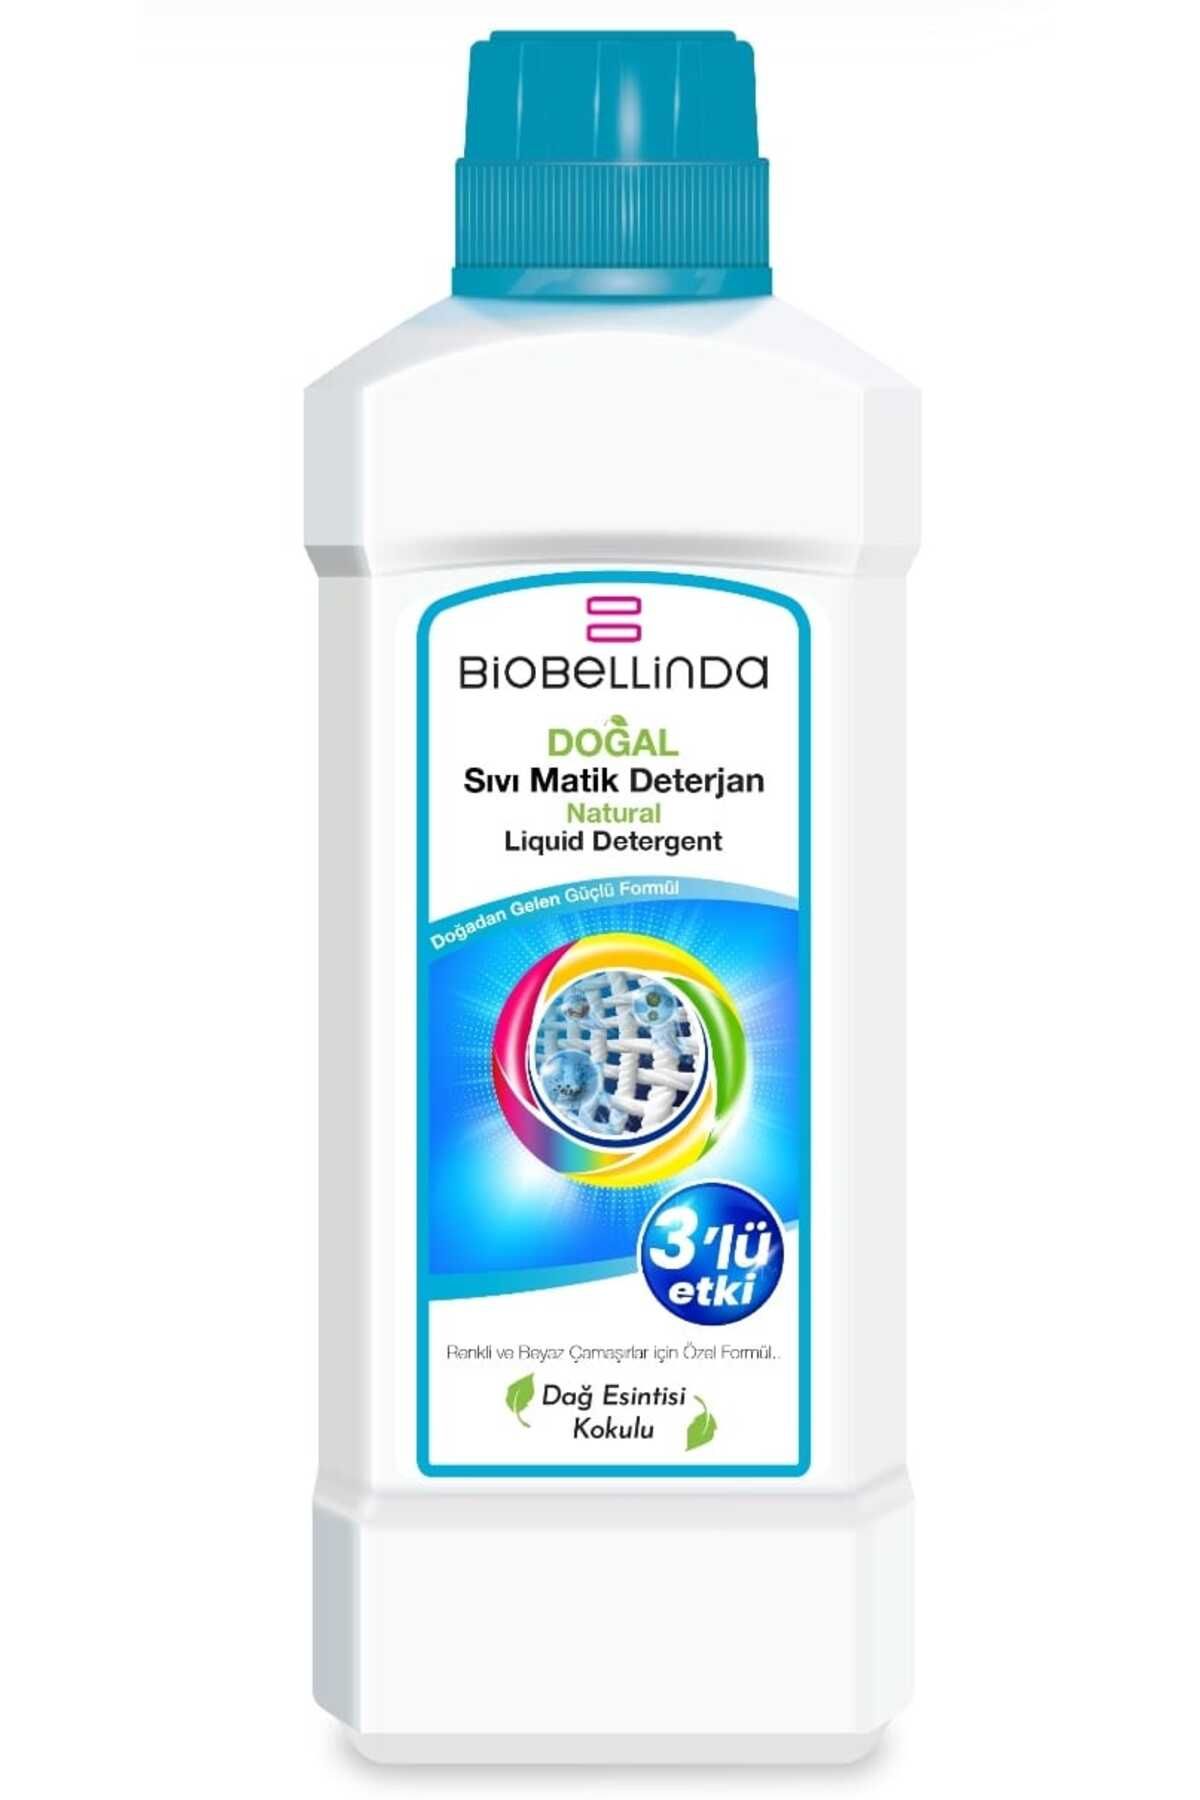 BioBellinda Doğal Sıvı Matik Deterjan 3'lü Etki